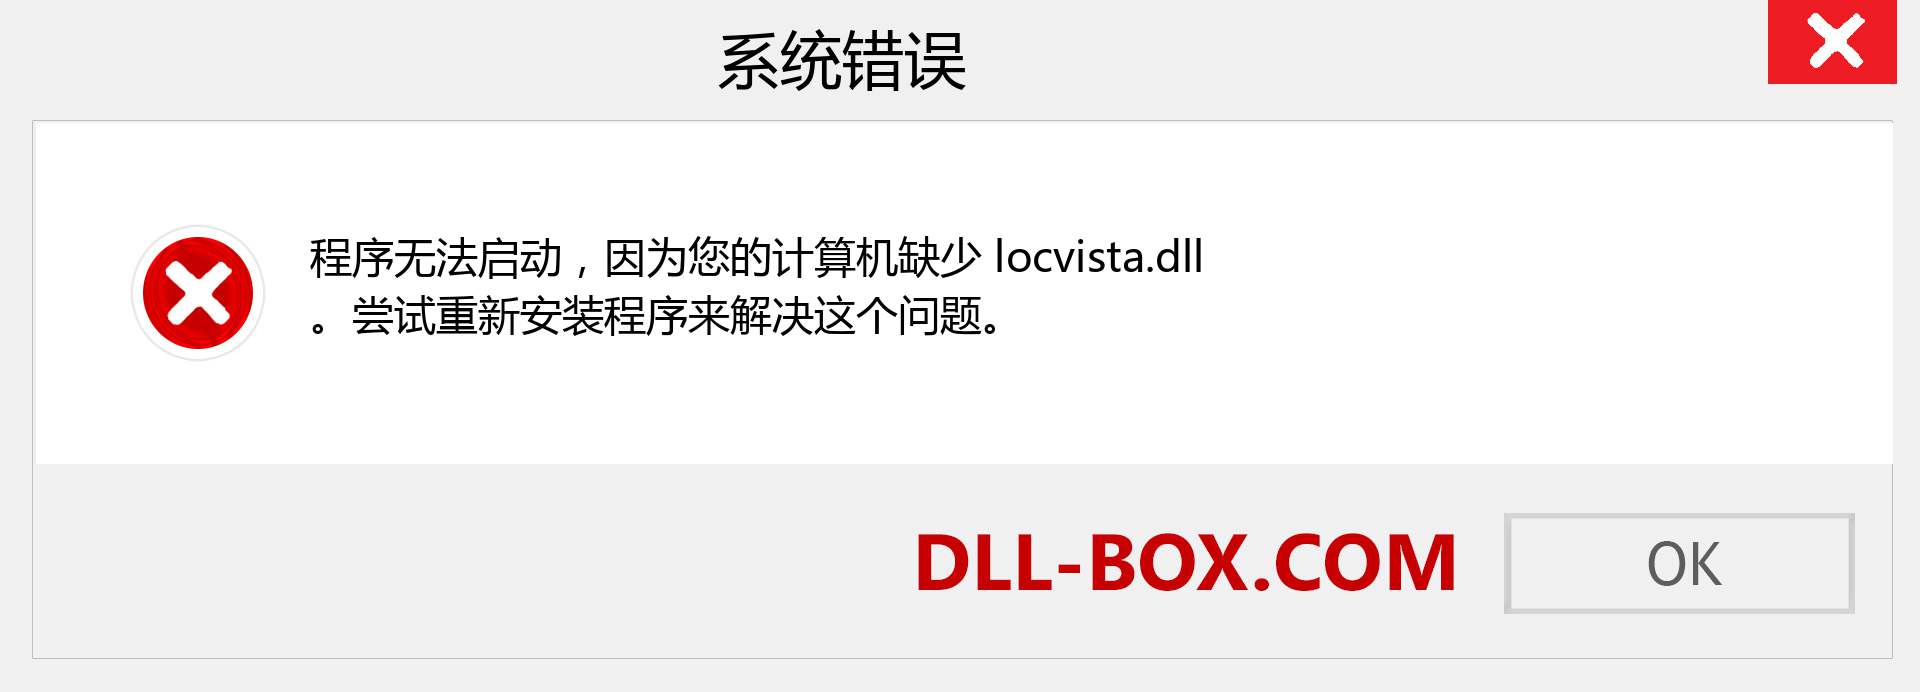 locvista.dll 文件丢失？。 适用于 Windows 7、8、10 的下载 - 修复 Windows、照片、图像上的 locvista dll 丢失错误